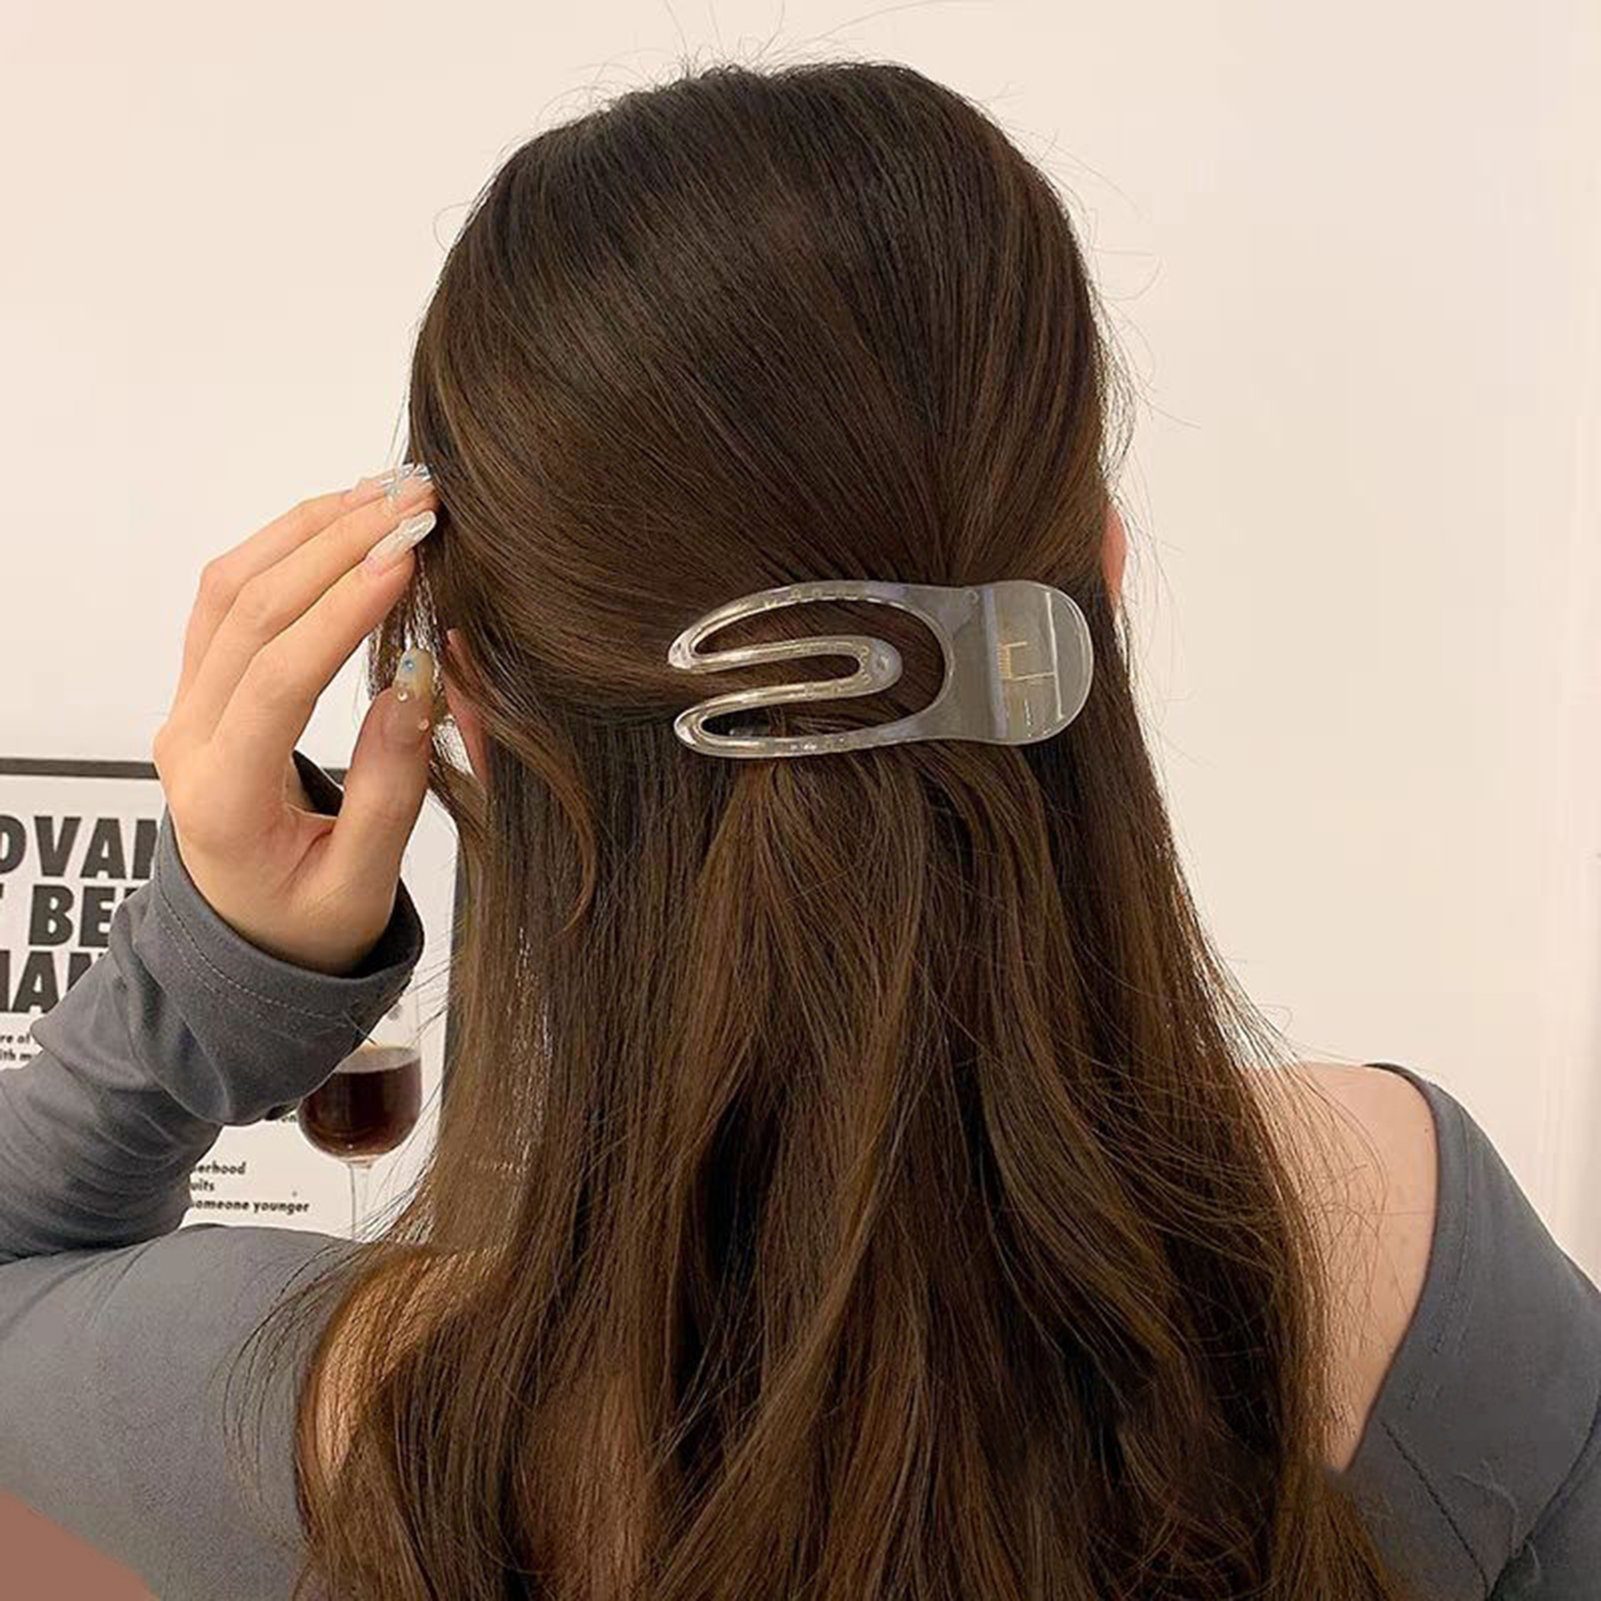 Rutaqian Haarklammer Haarklammer Geleefarbene Clips für Frauen Wild Haarnadel-Kopfschmuck, Modische Haarspangen-Haaraccessoires, Klassischseitig grau